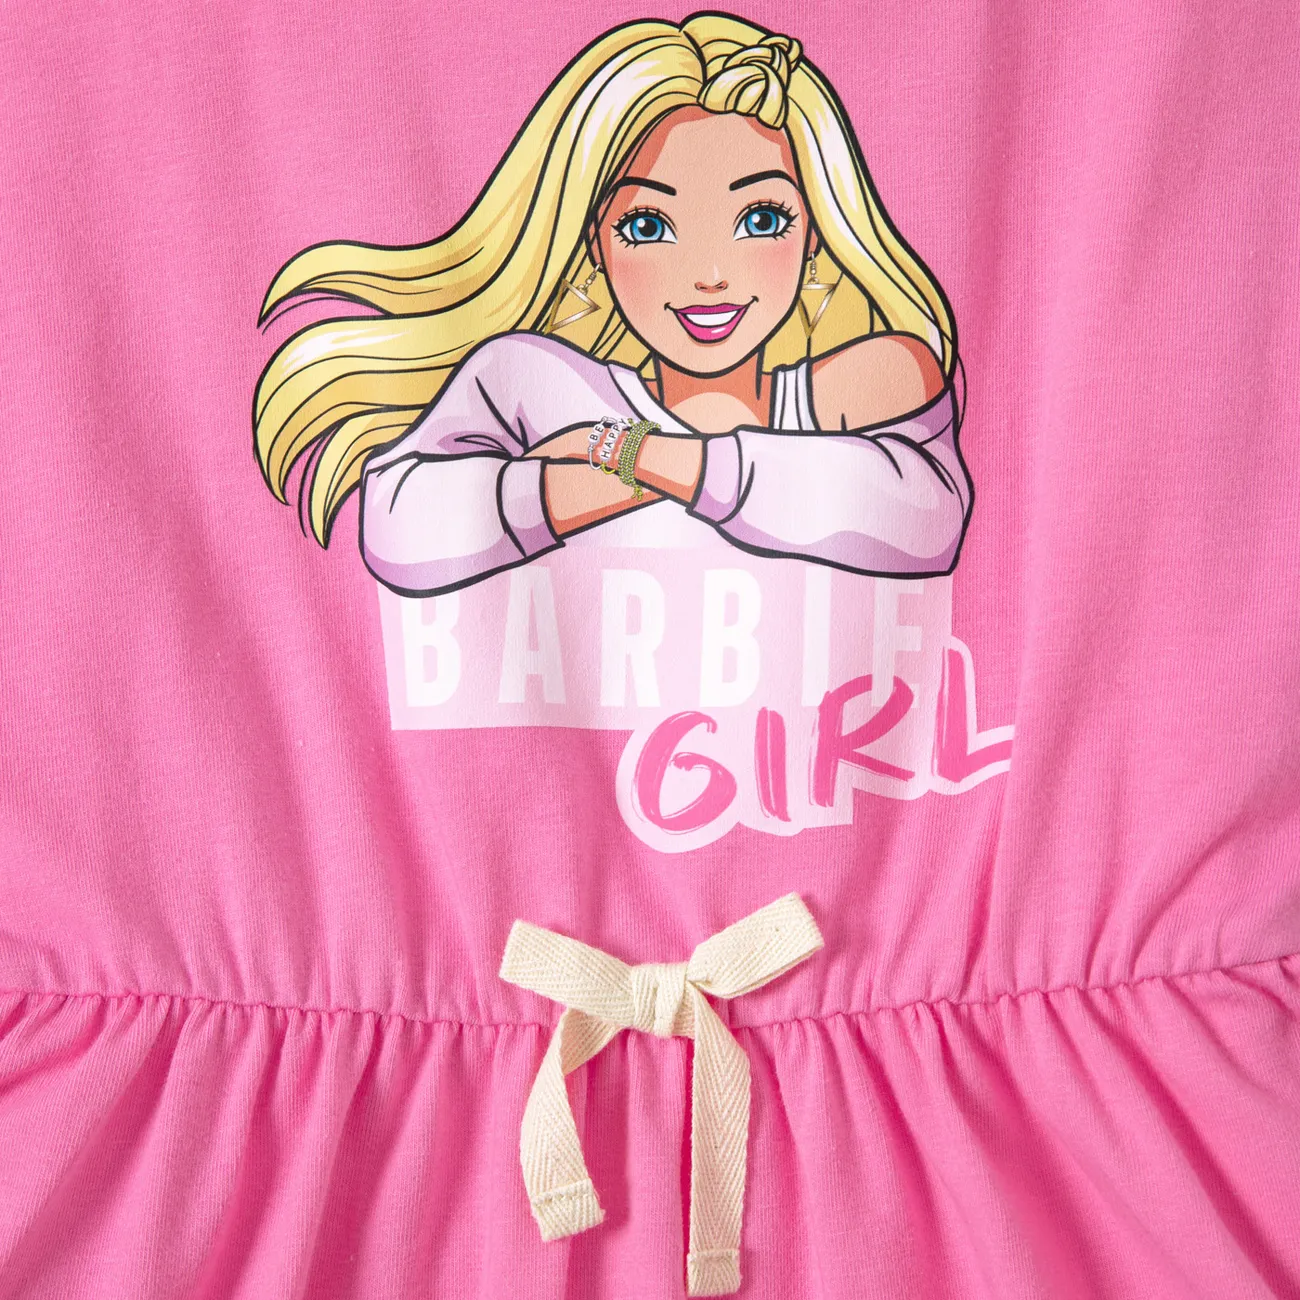 Barbie IP حريمي طفولي فساتين زهري big image 1